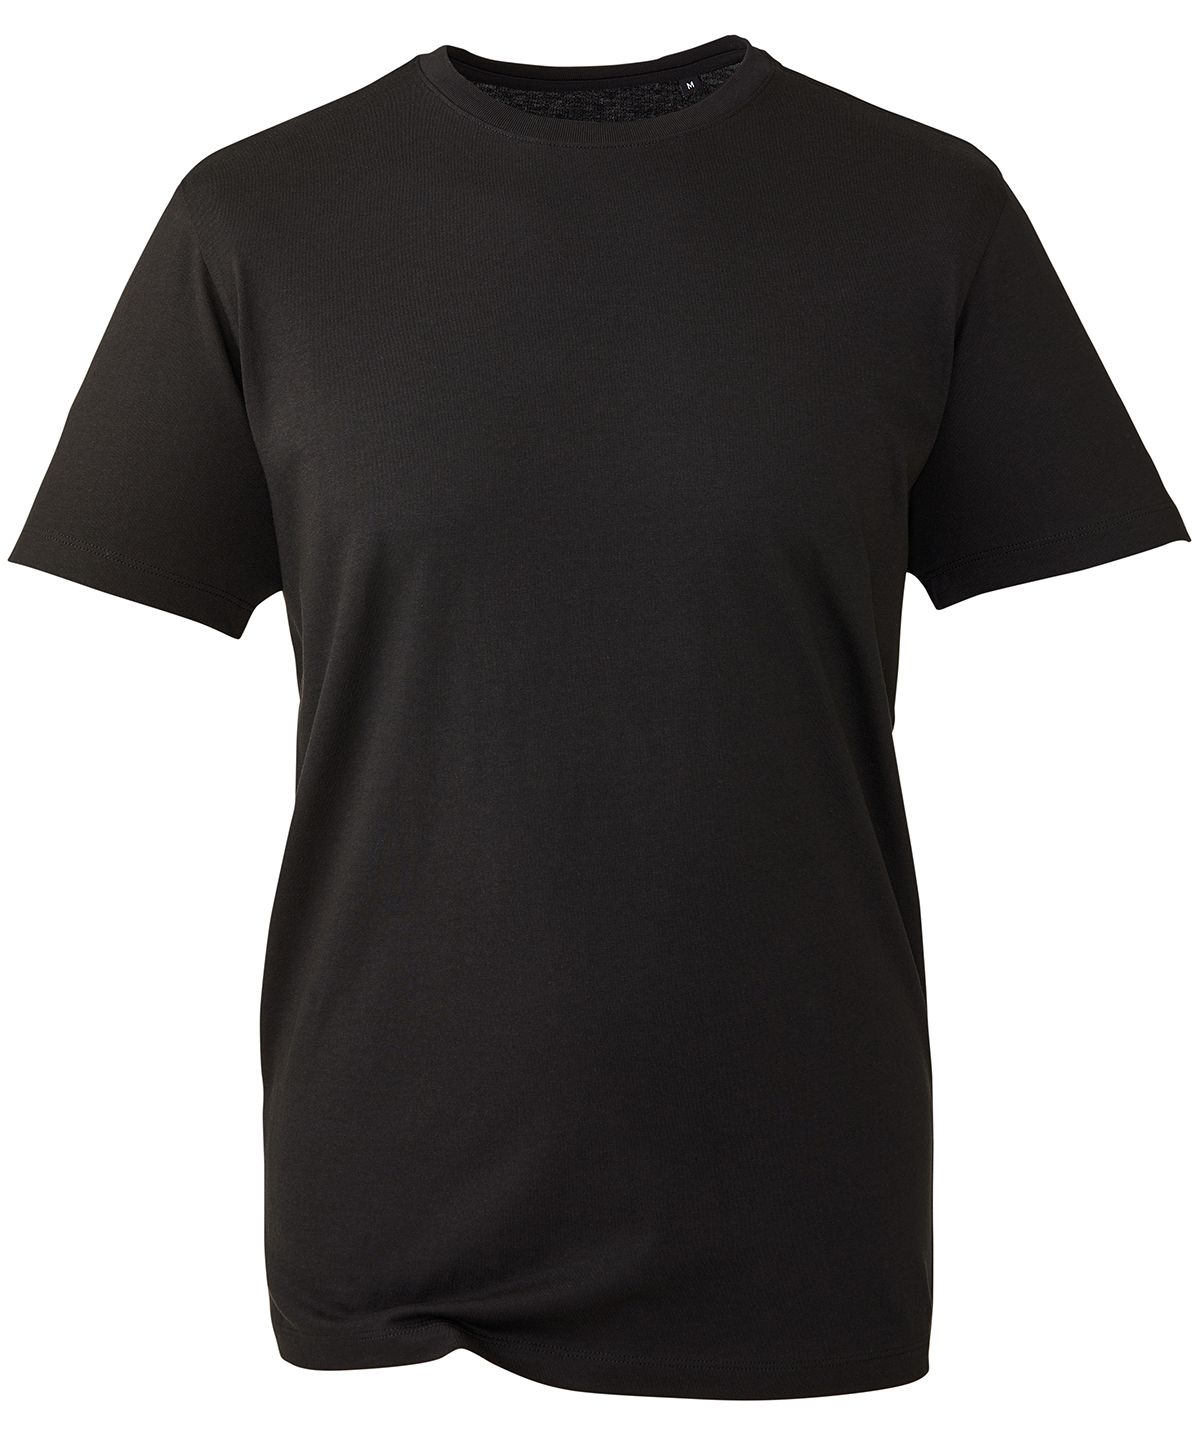 Anthem T-Shirt Black Size 2XLarge